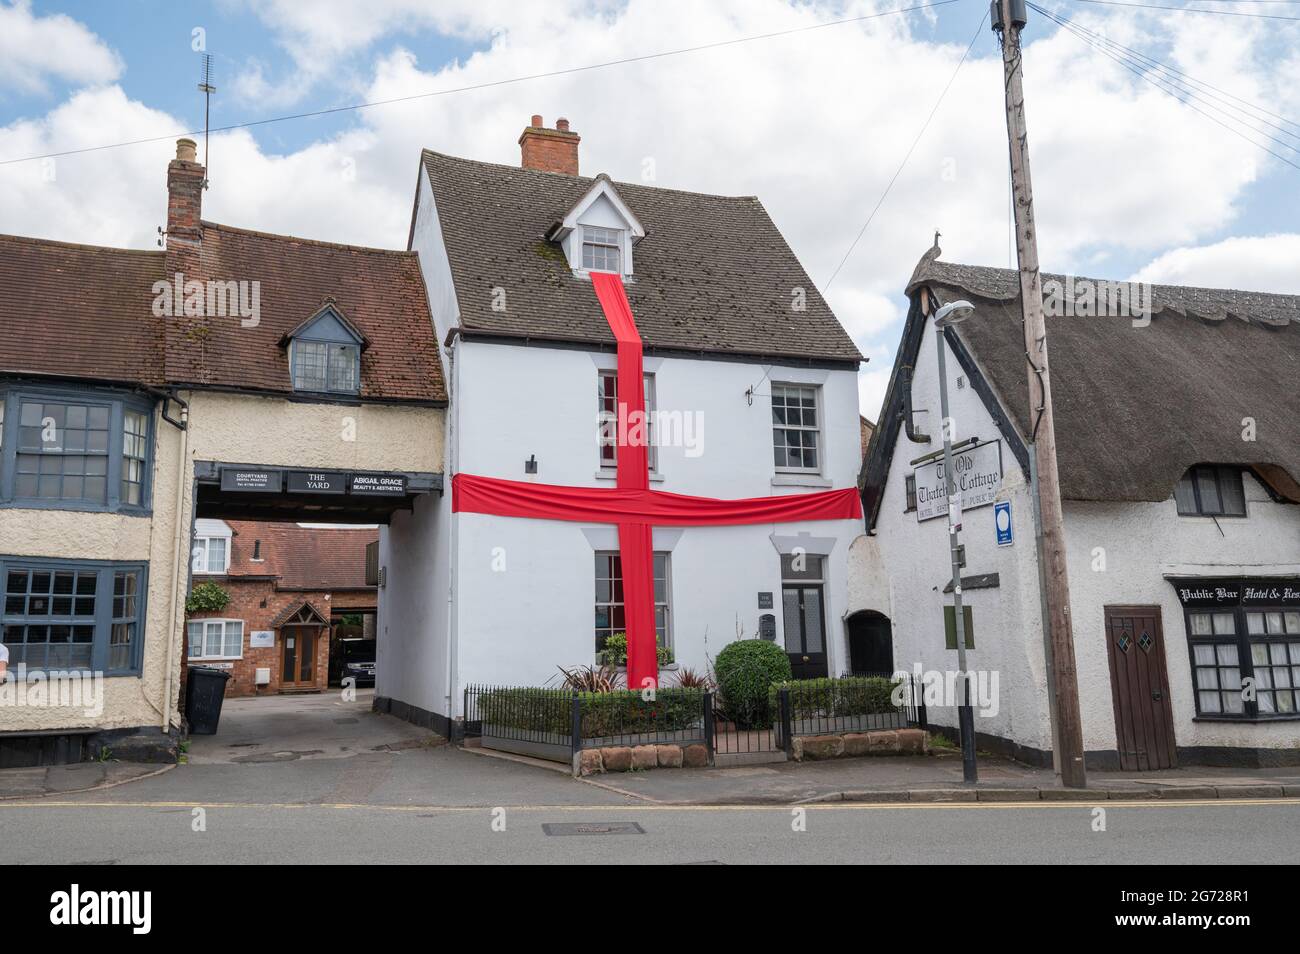 Warwickshire, Royaume-Uni. 10 juillet 2021. 10 juillet 2021, une maison à Dunchurch, Warwickshire vêtue de ruban rouge pour la finale Euro 2020 dans une croix de St George. Crédit : Jamie Gray/Alay Live News Banque D'Images